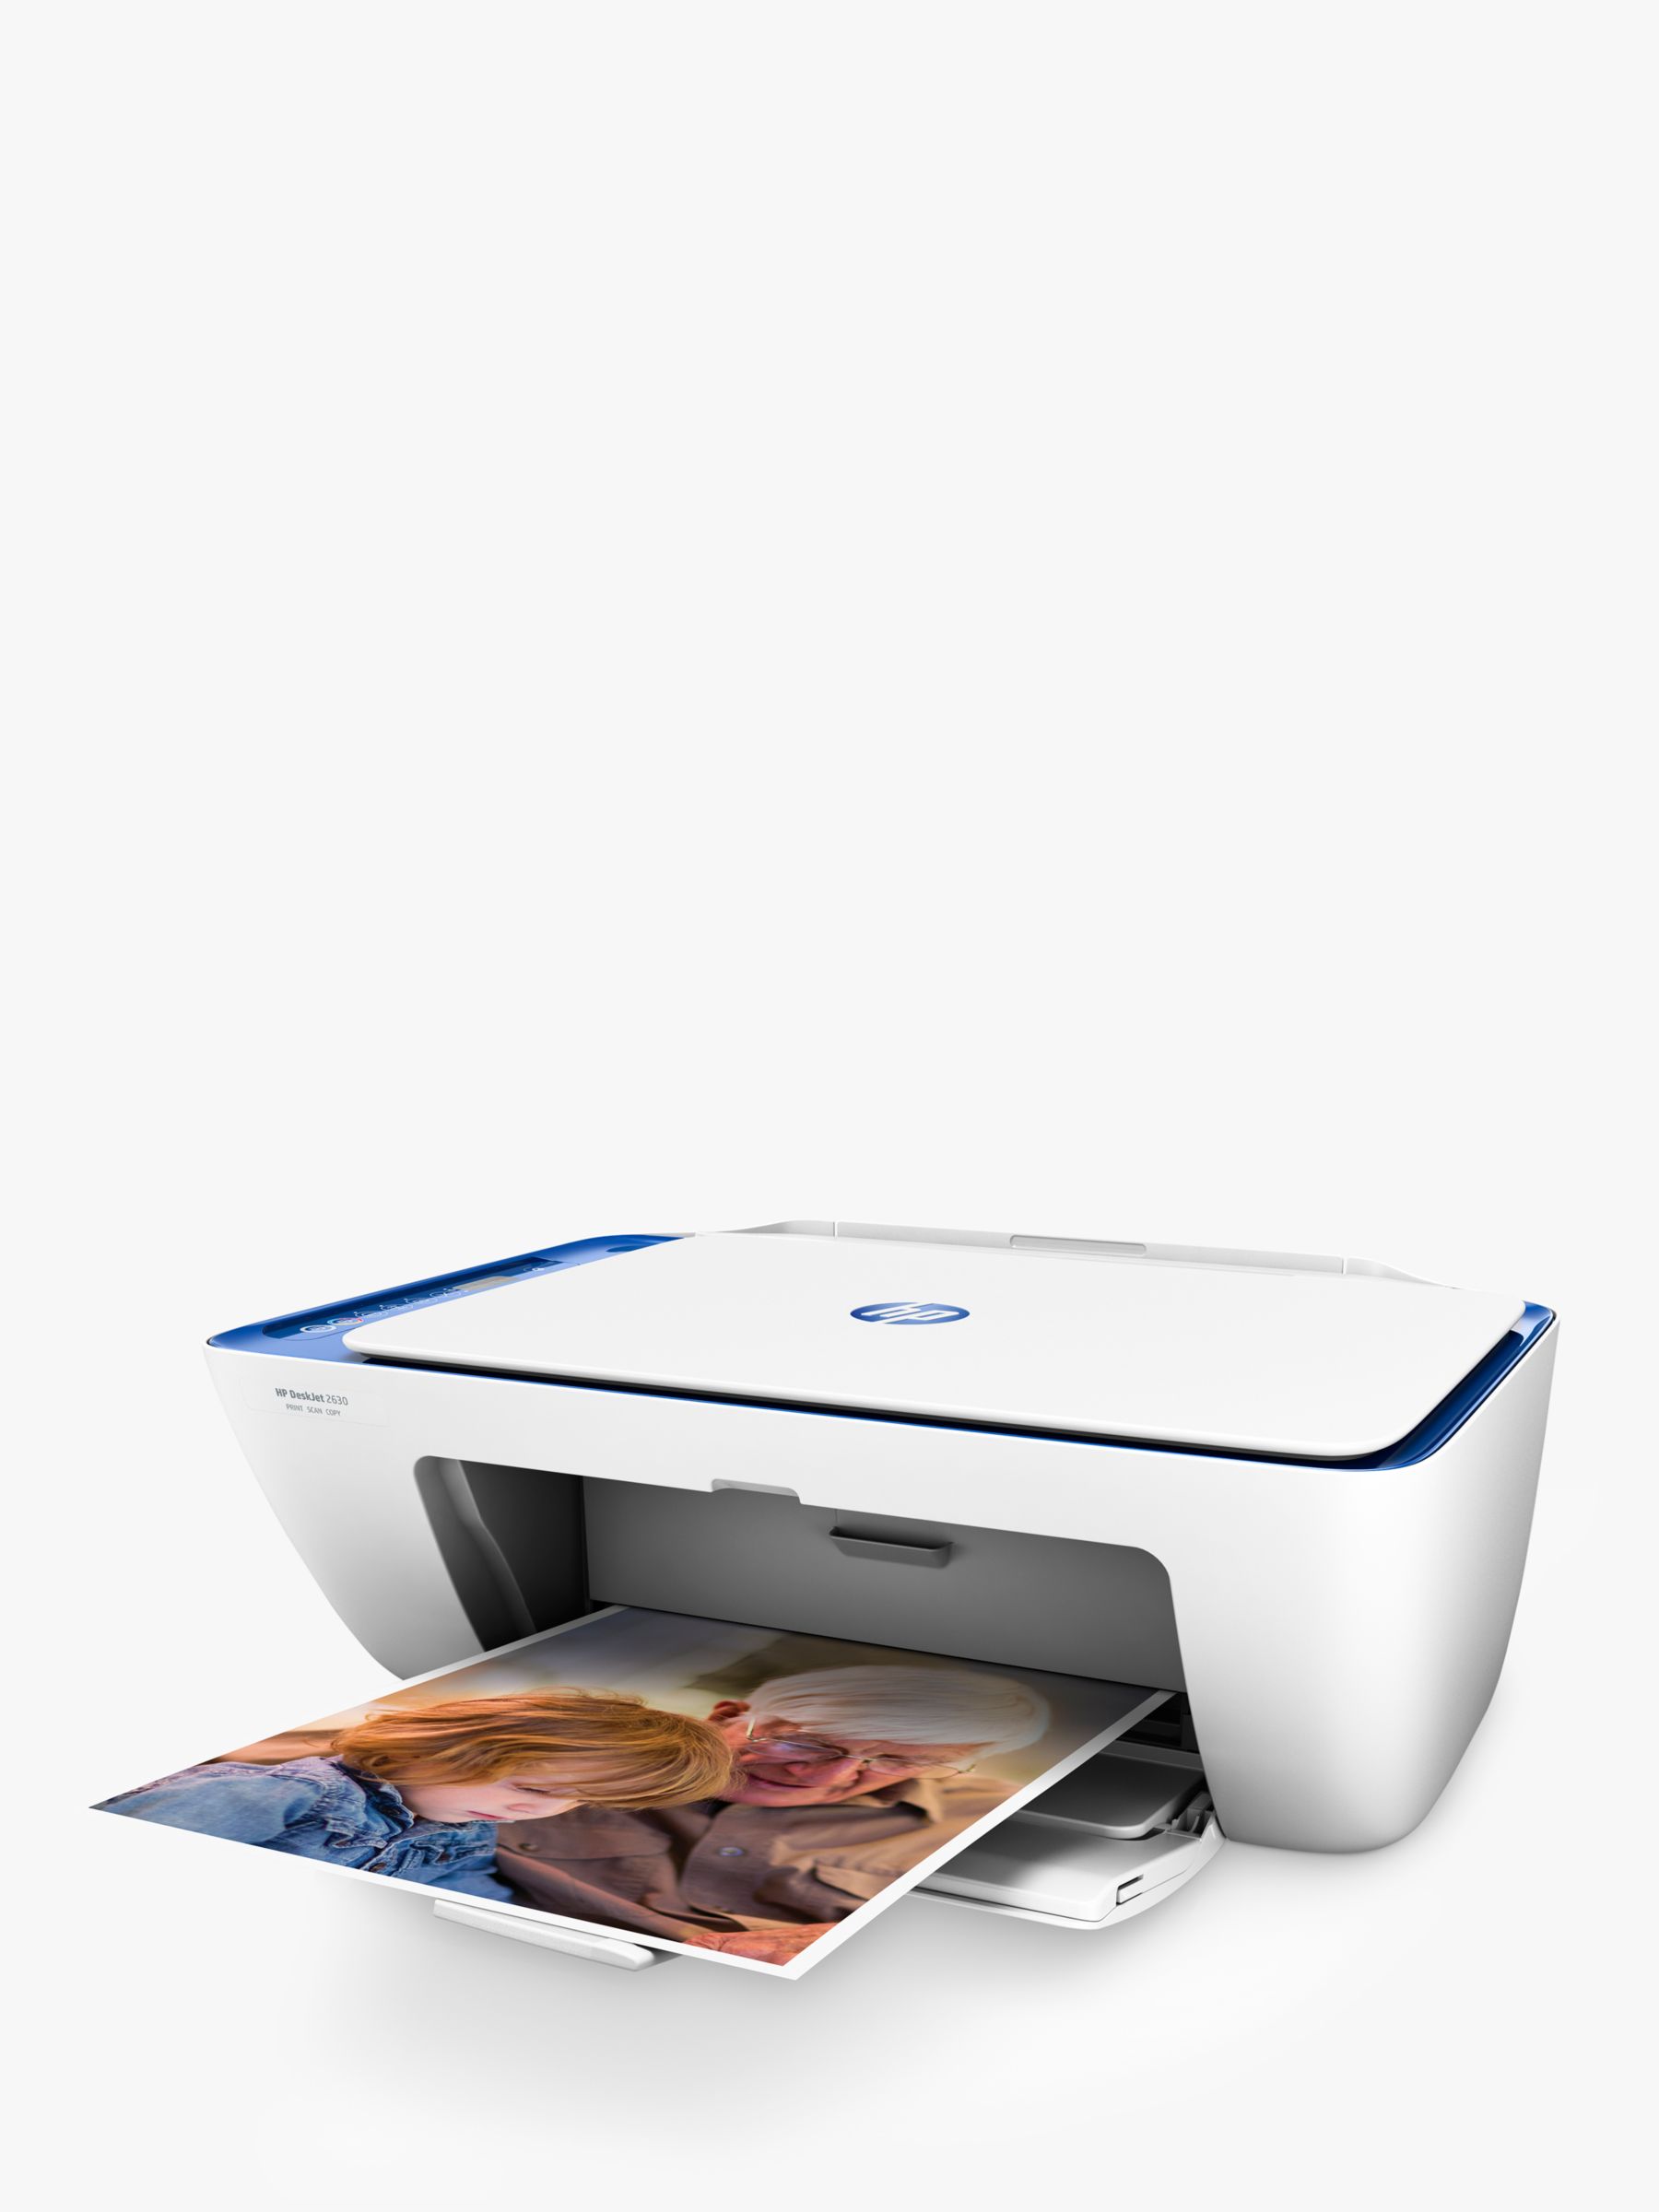 Notitie ga werken Zwembad HP Deskjet 2630 All-in-One Wireless Printer, HP Instant Ink Compatible with  2 Months Trial, White